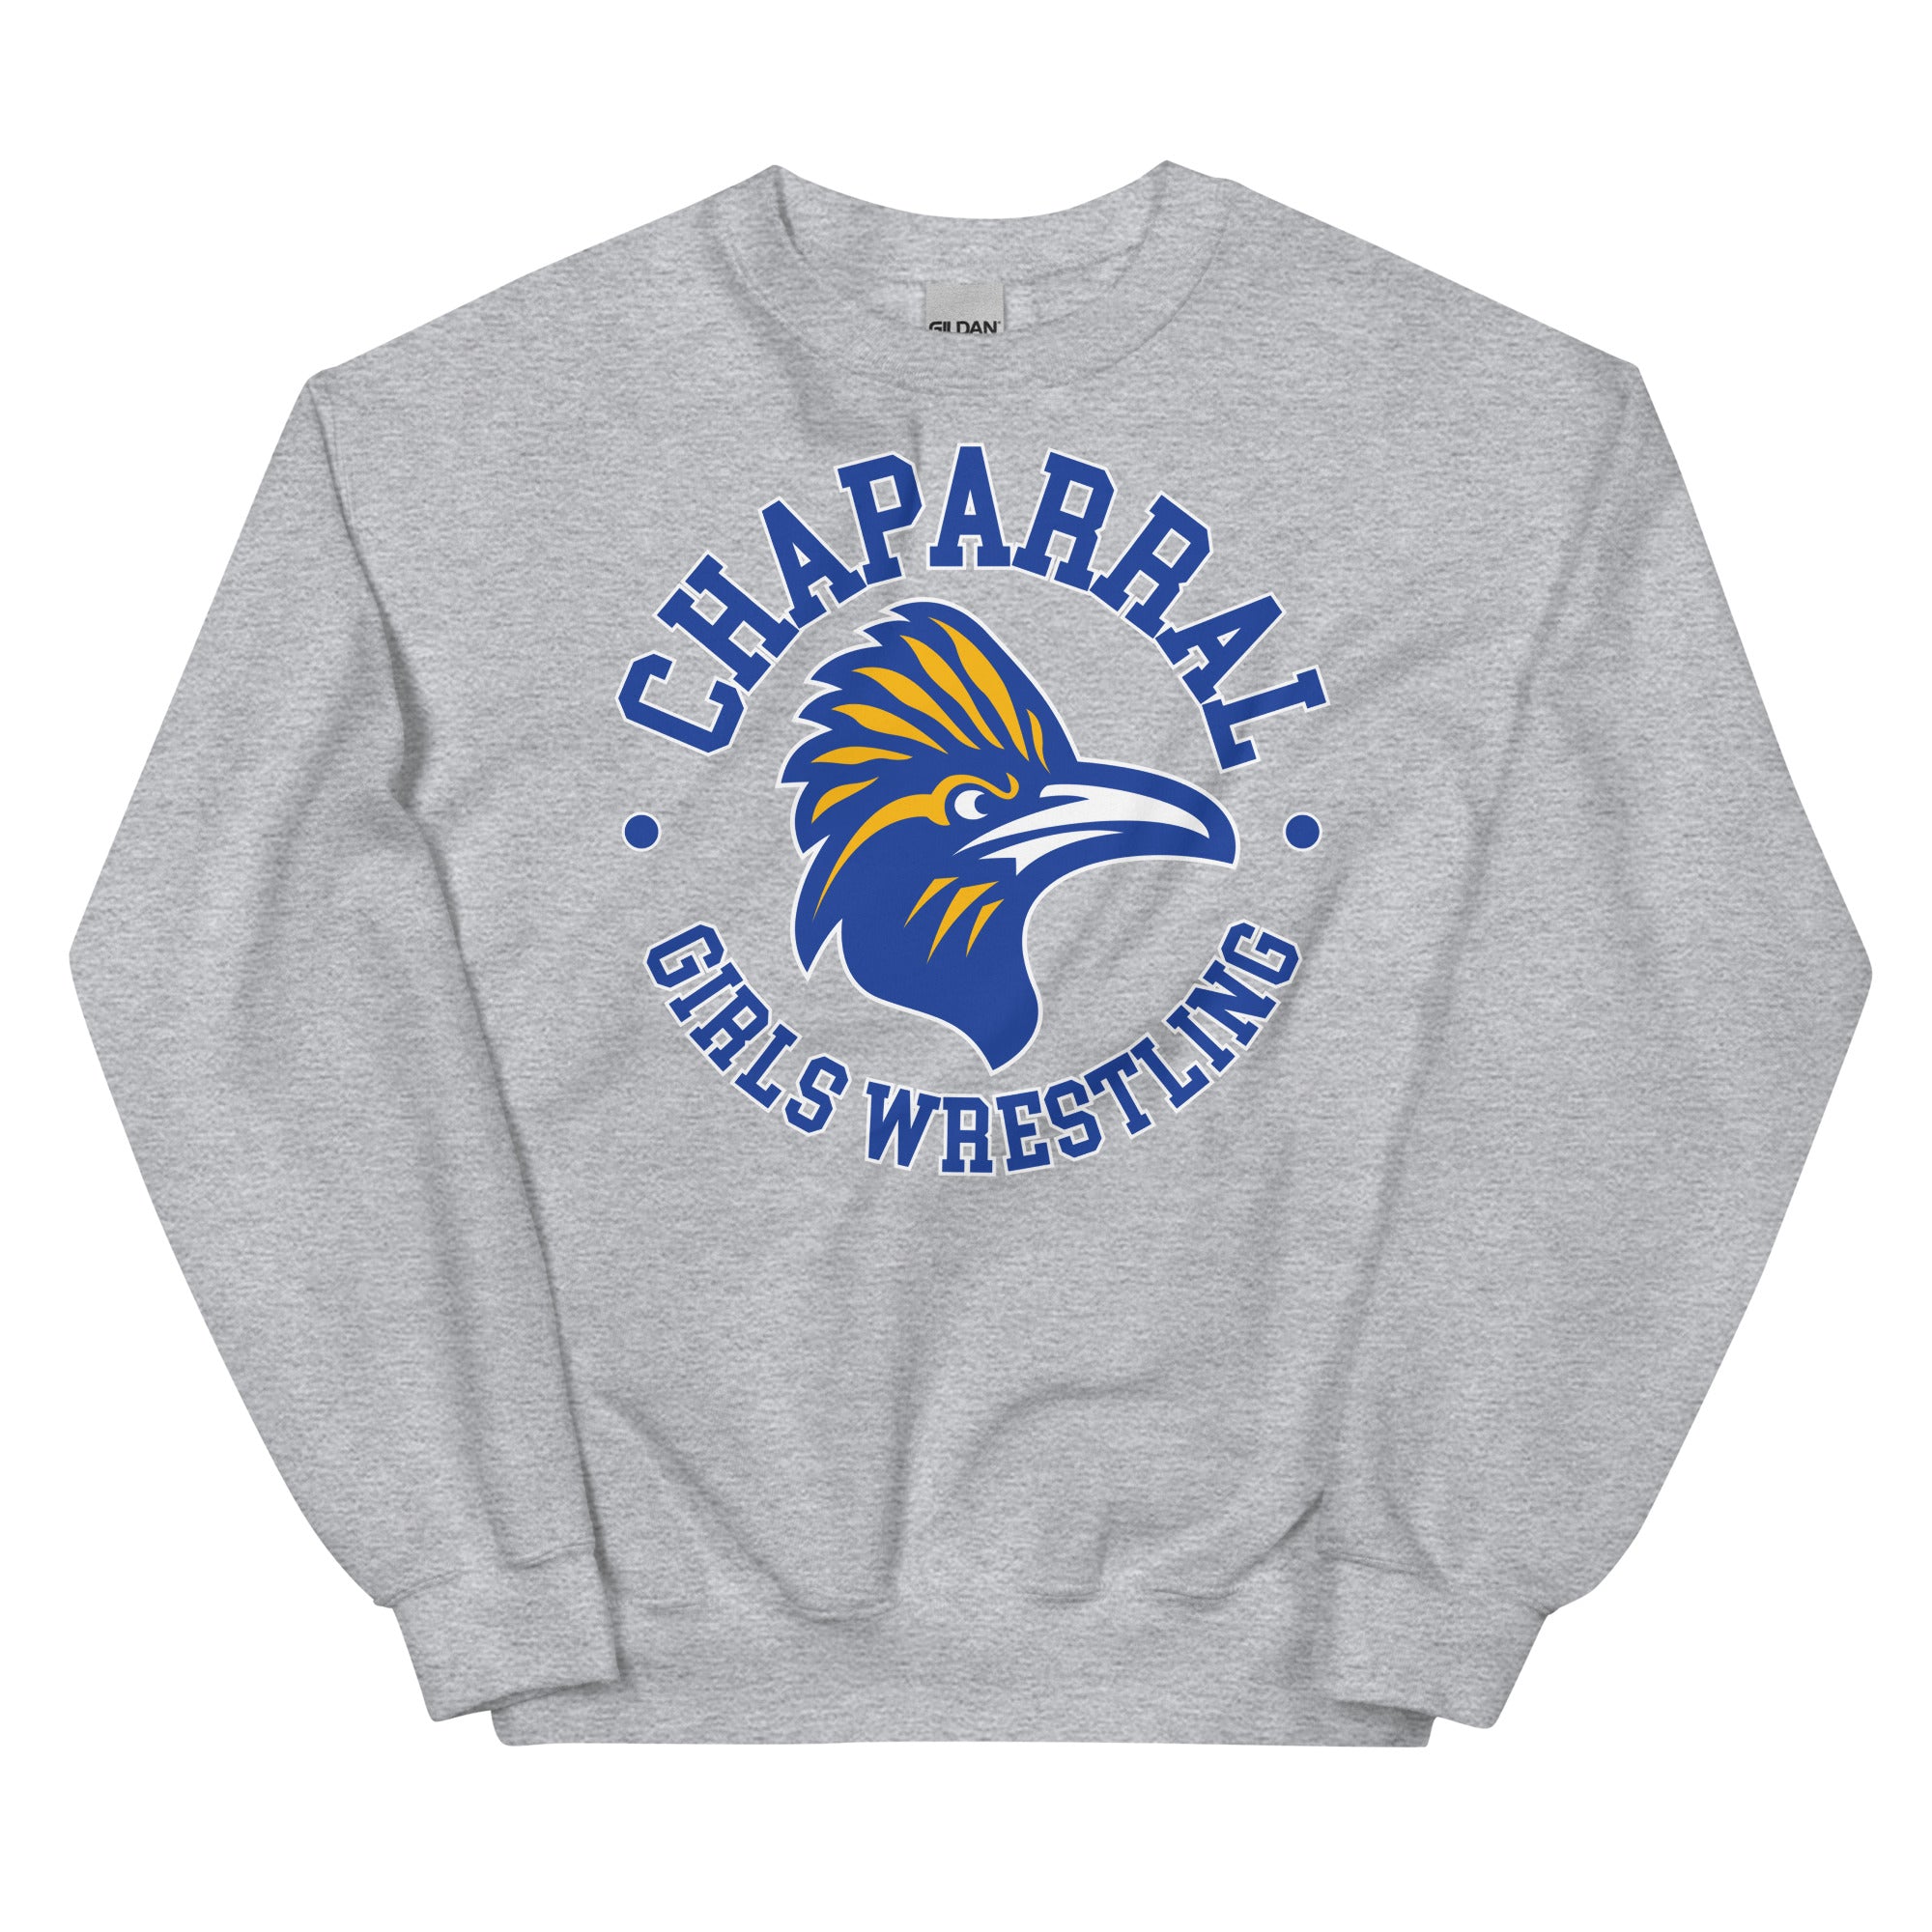 Chaparral High School Wrestling Unisex Crew Neck Sweatshirt